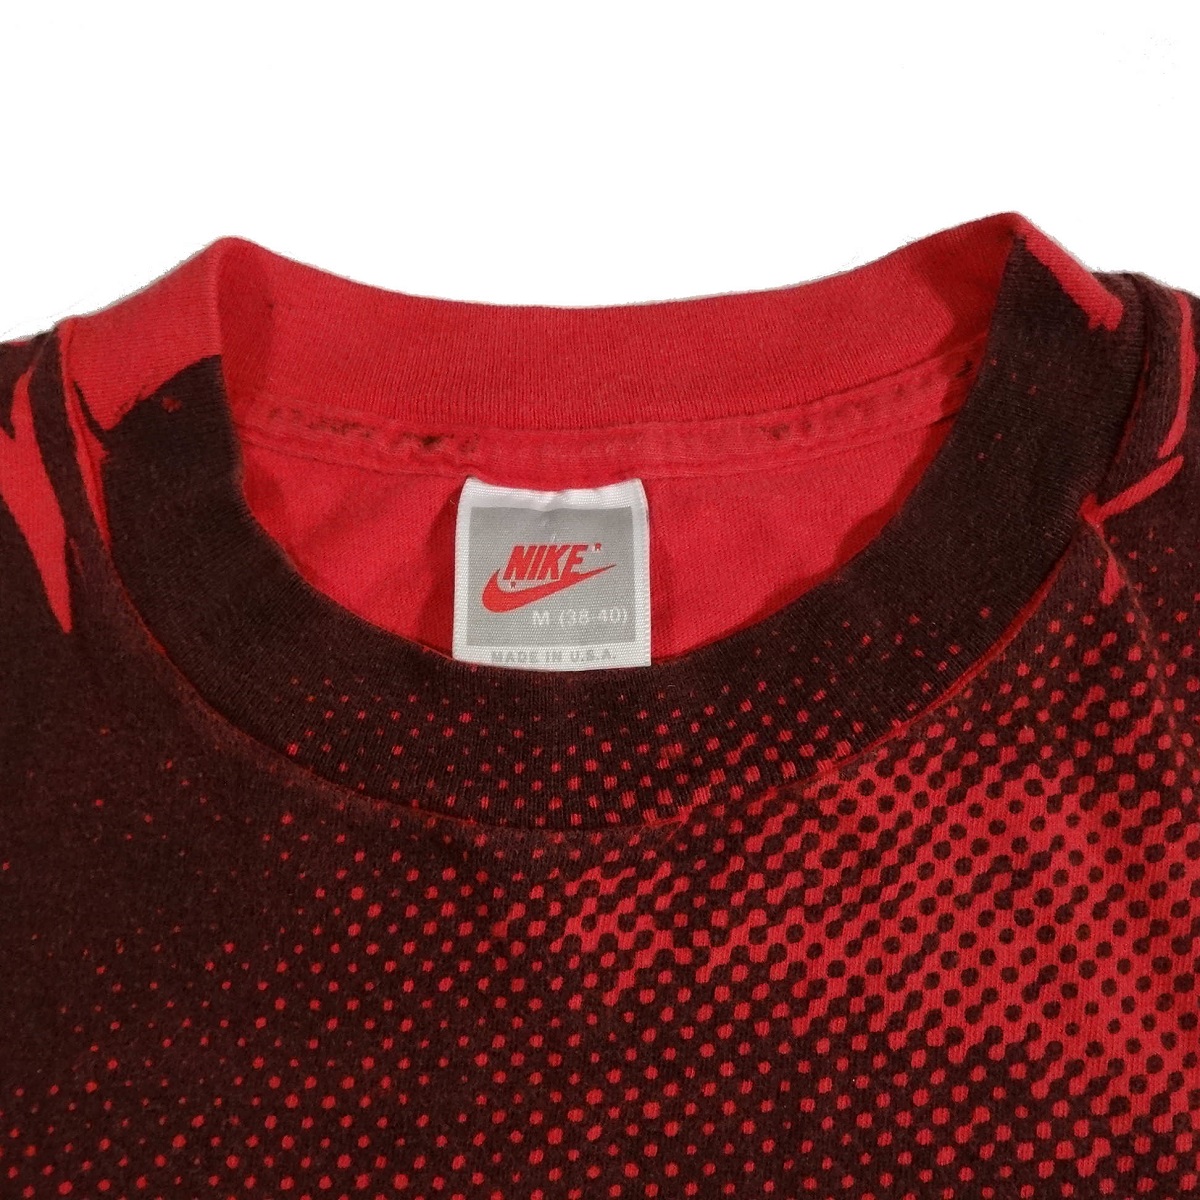 Buy > nike air jordan t shirt red > in stock